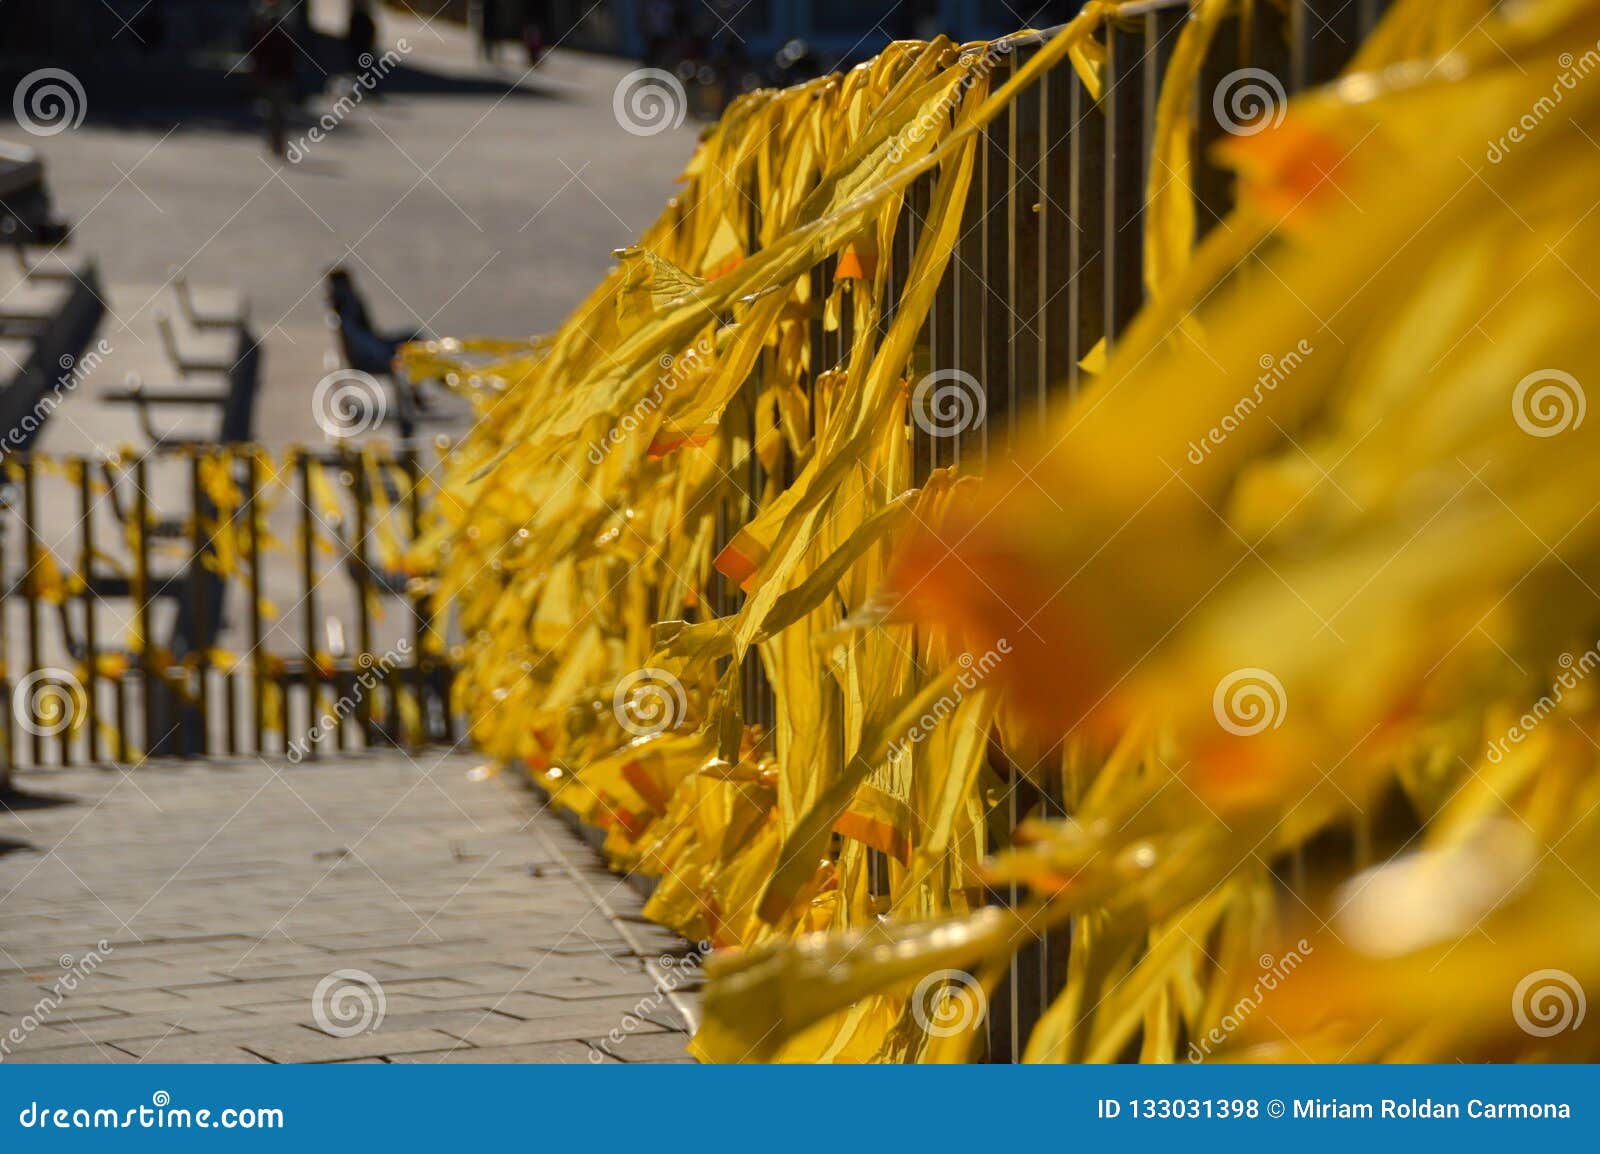 yellow ribbon in escala